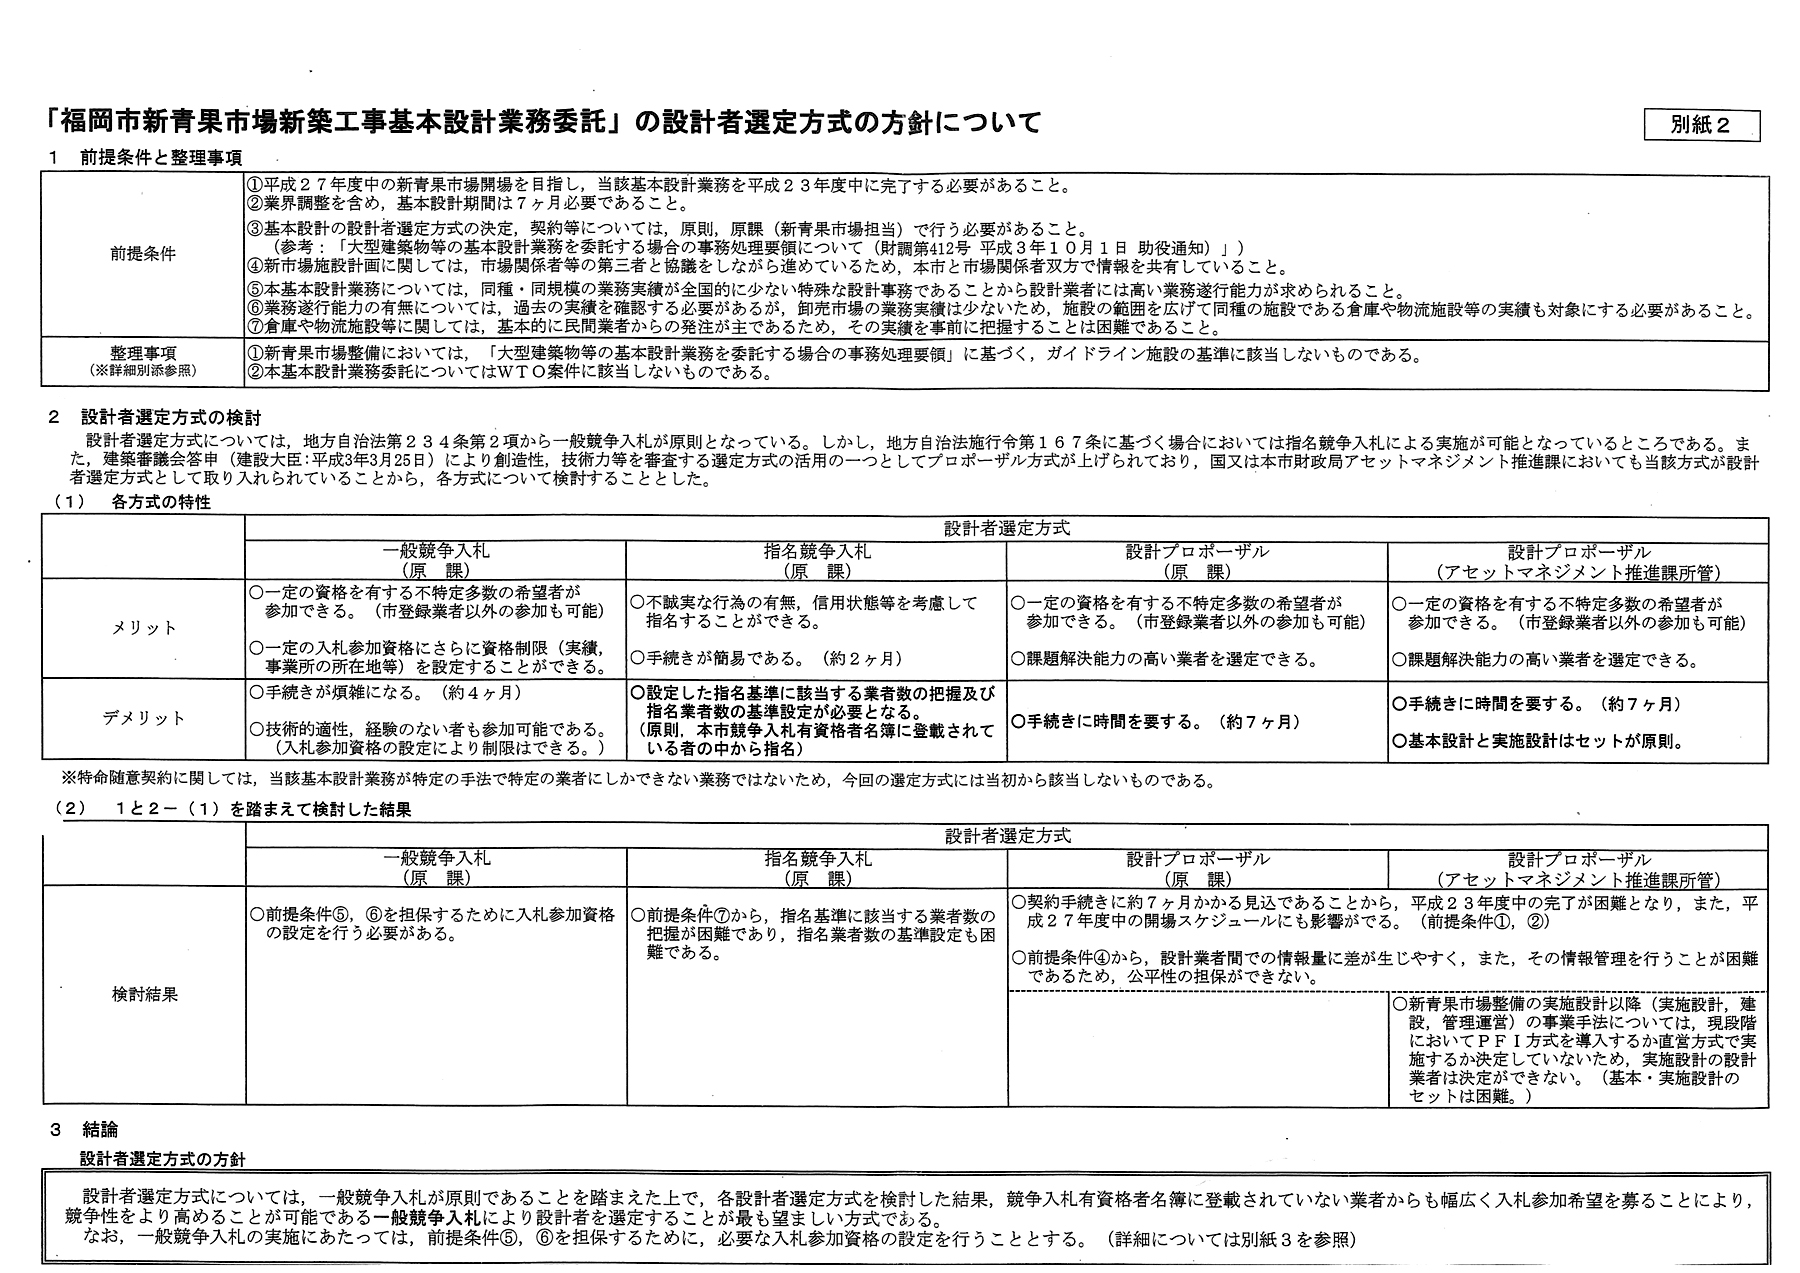 http://hunter-investigate.jp/news/2011/10/12/20111013_h01-01.jpg